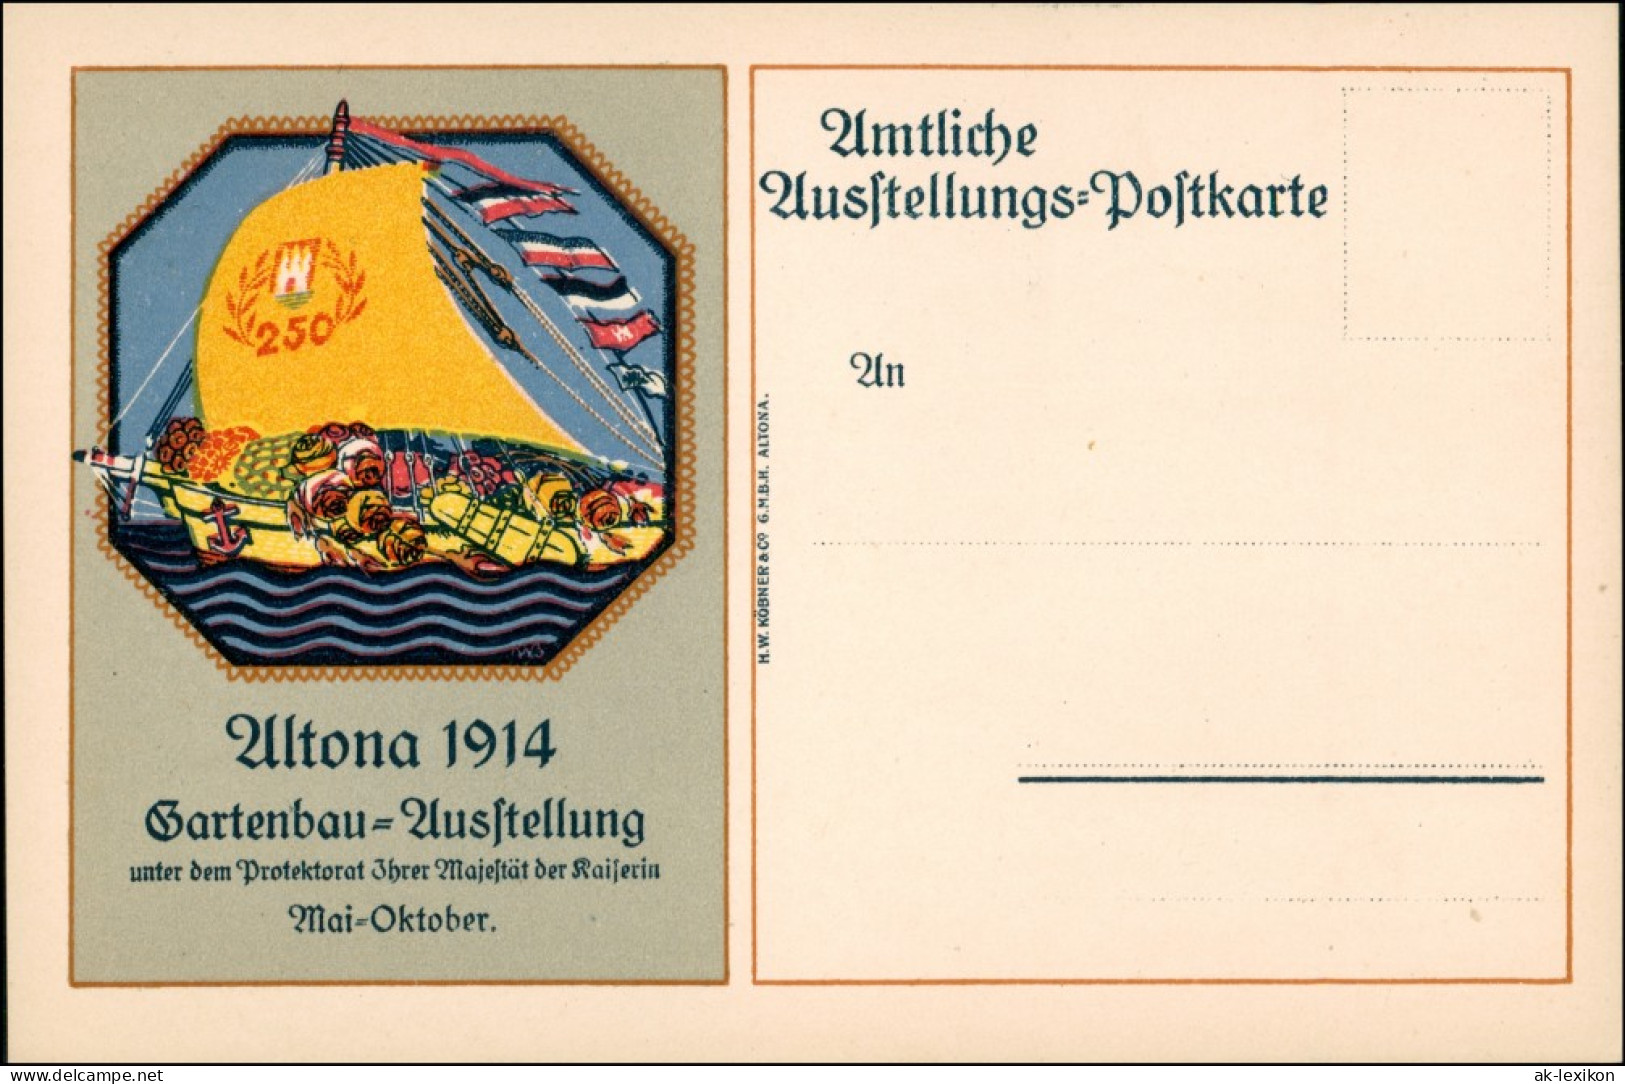 Altona-Hamburg Gartenbau-Ausstellung, Amtliche Ausstellungspostkarte 1914 - Altona